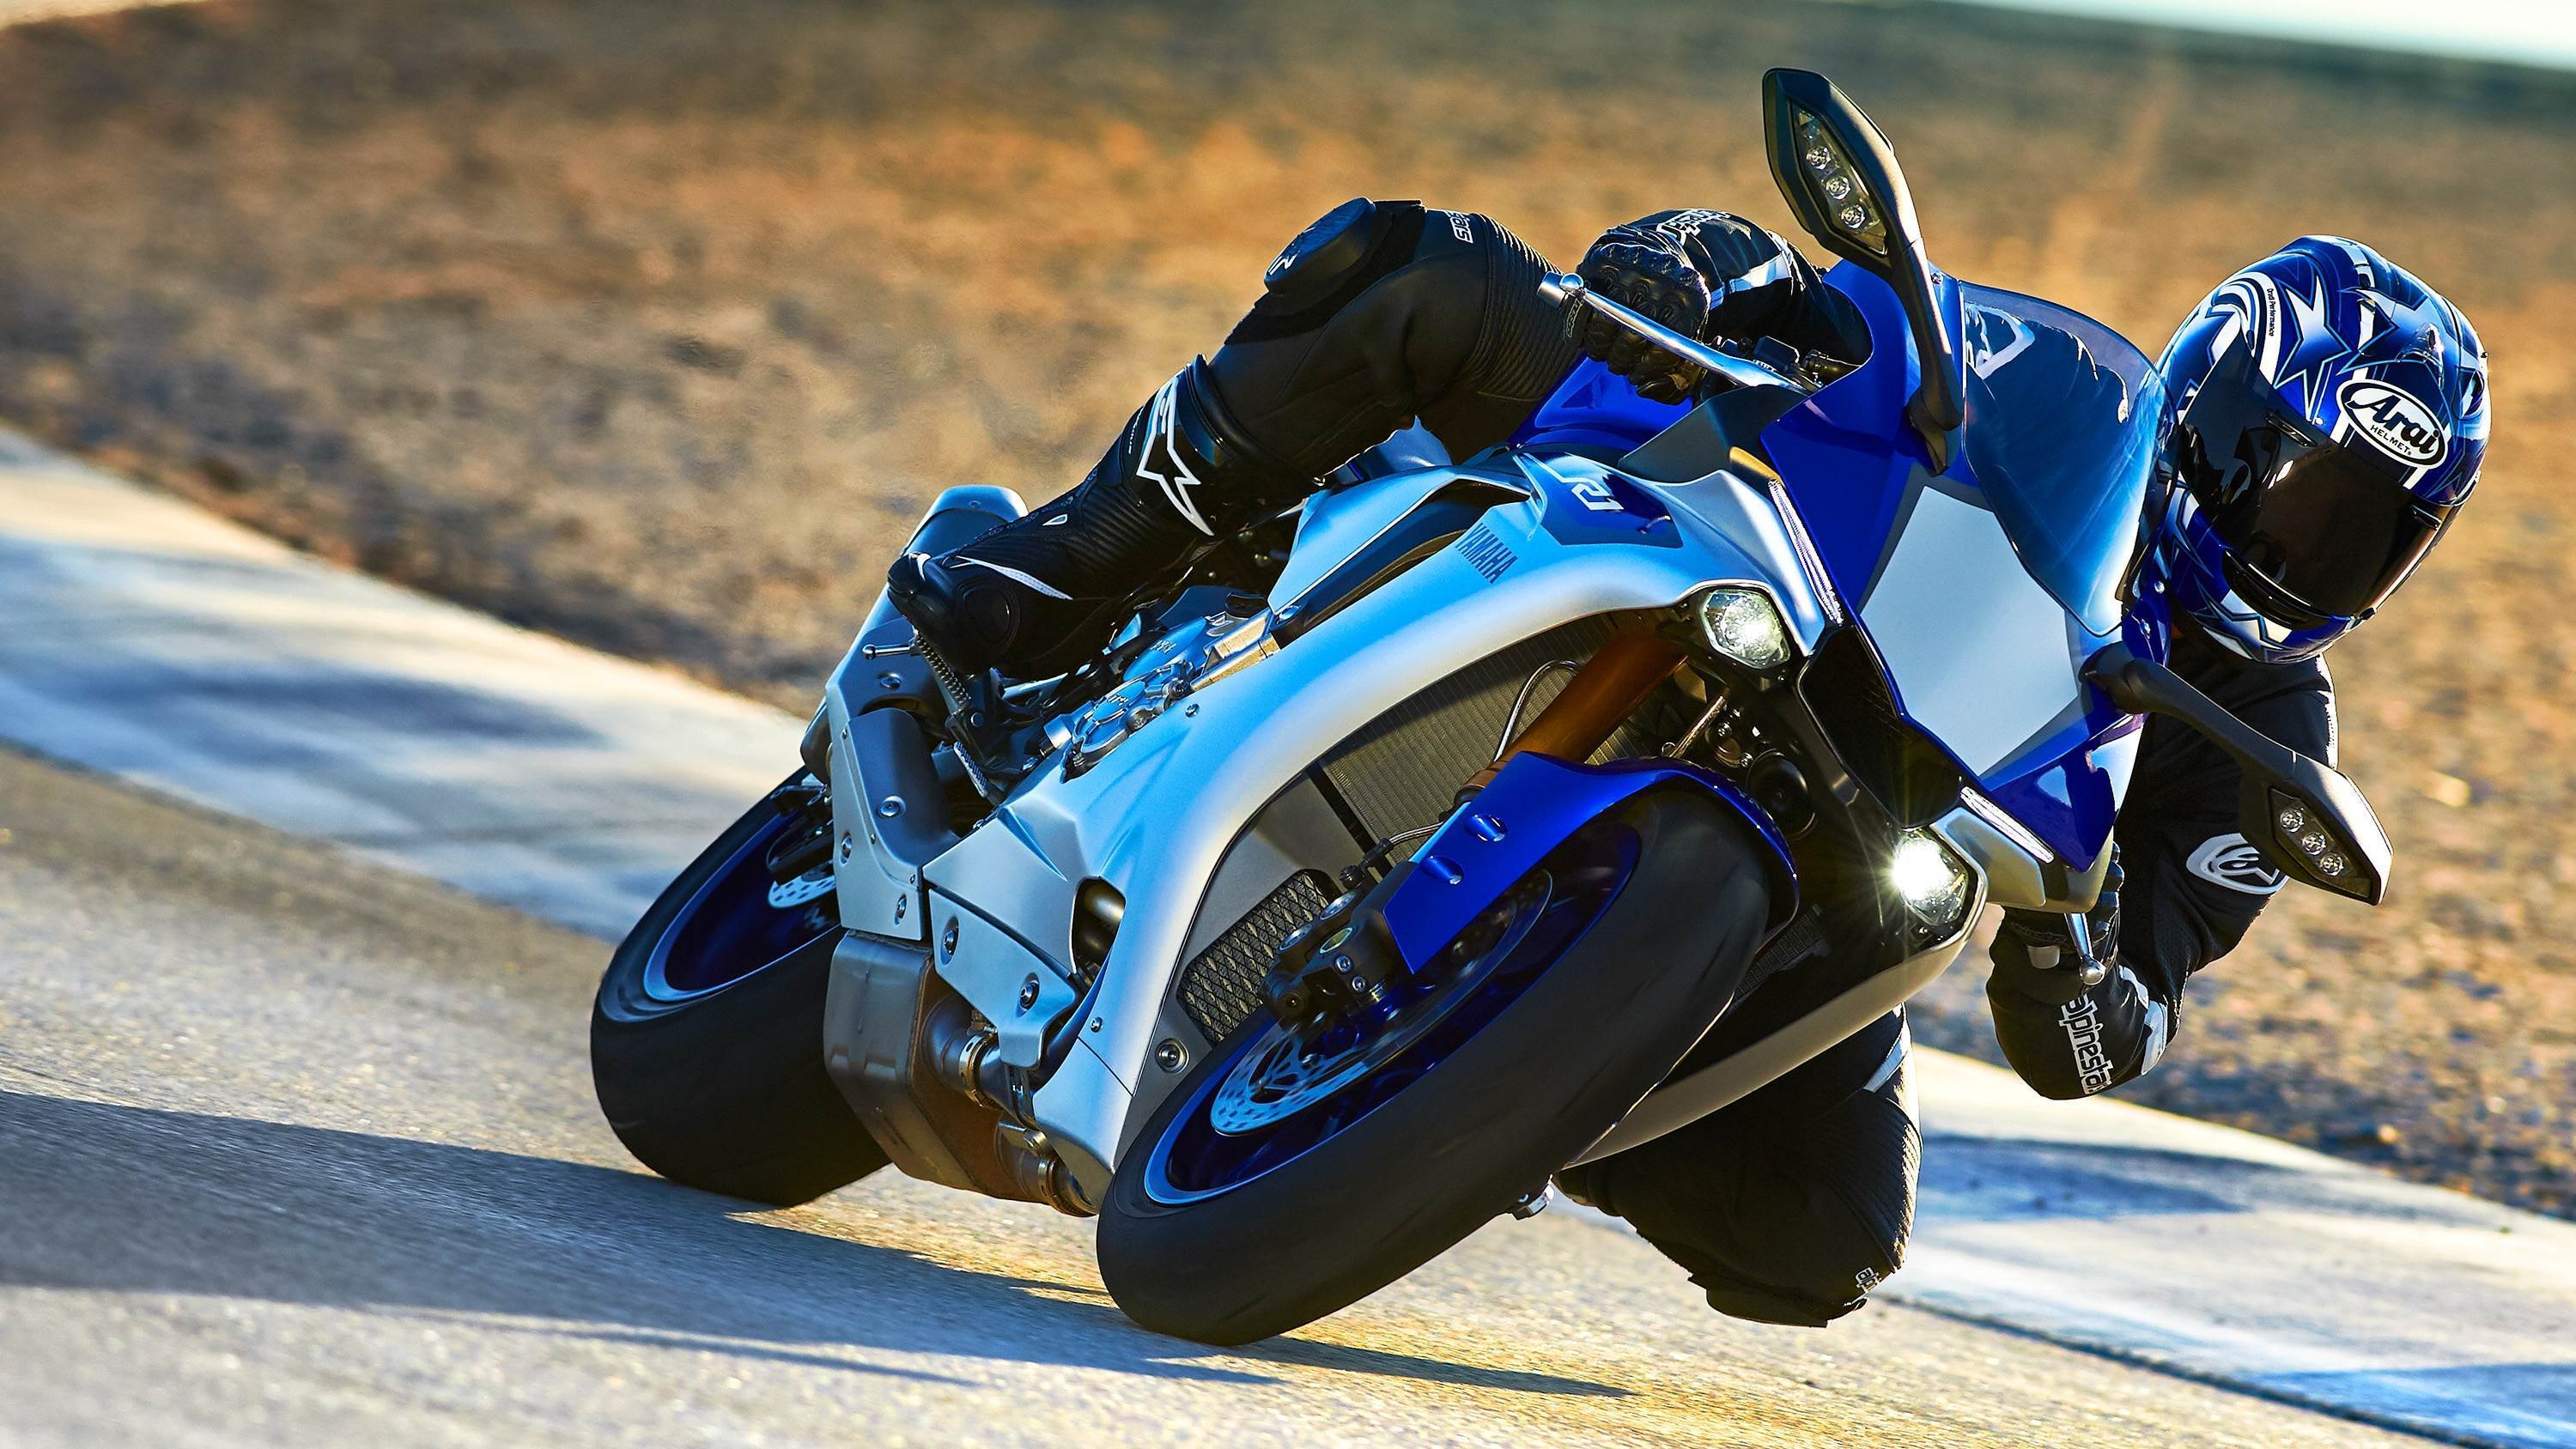 fond d'écran 2015,moto,véhicule,superbike racing,course de moto,course sur route